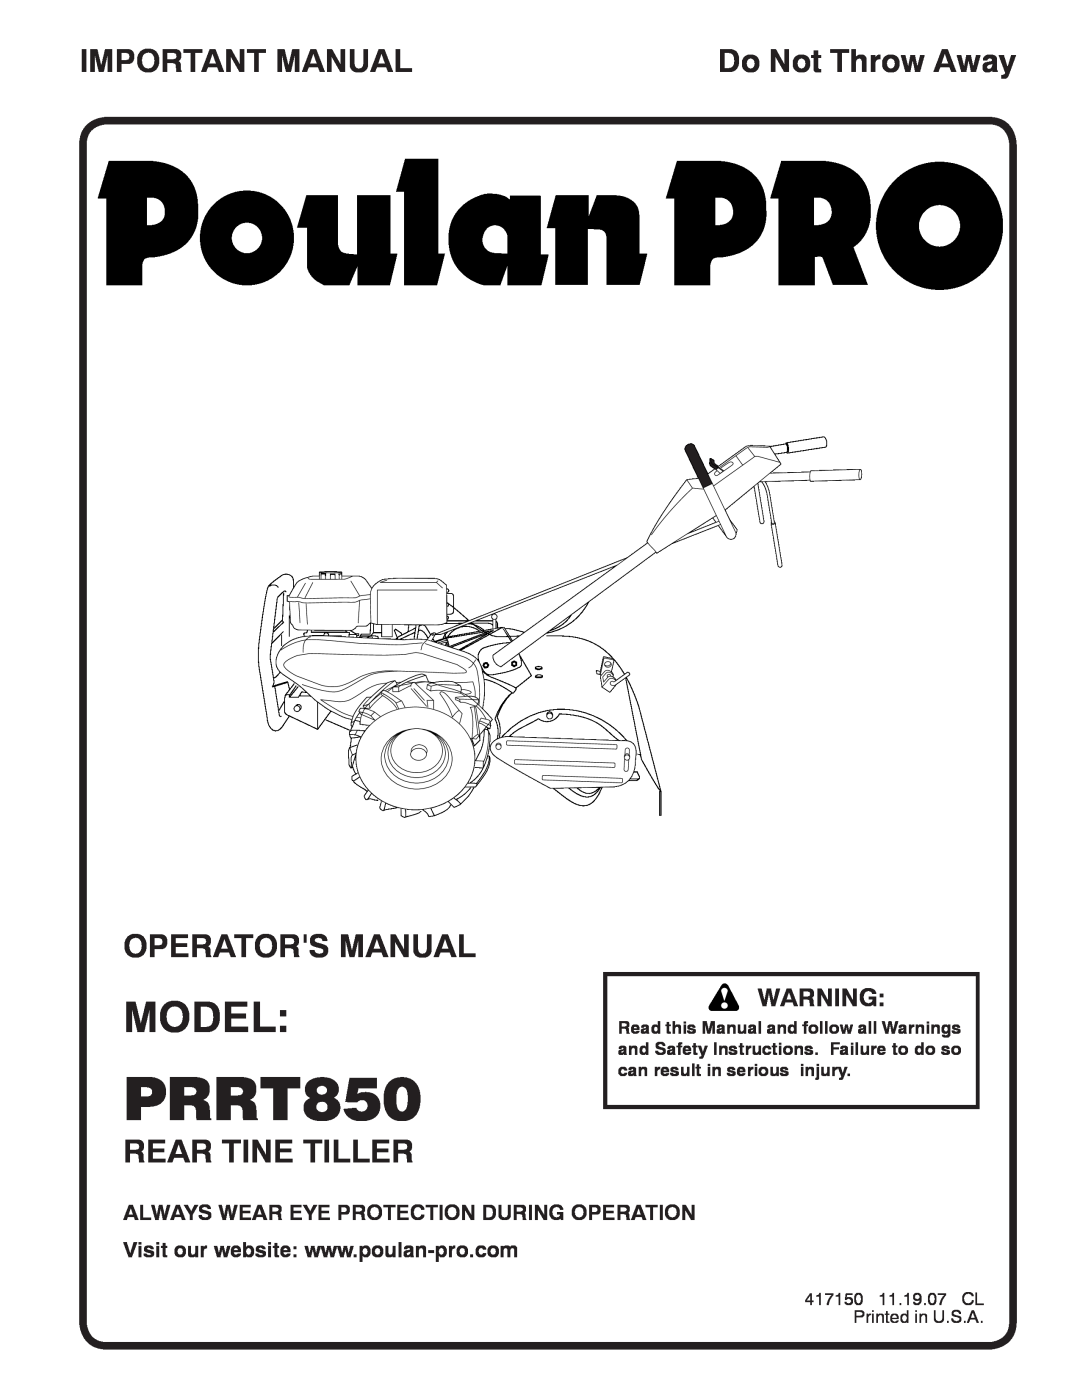 Poulan PRRT850 manual Model, Important Manual, Operators Manual, Rear Tine Tiller, Do Not Throw Away 